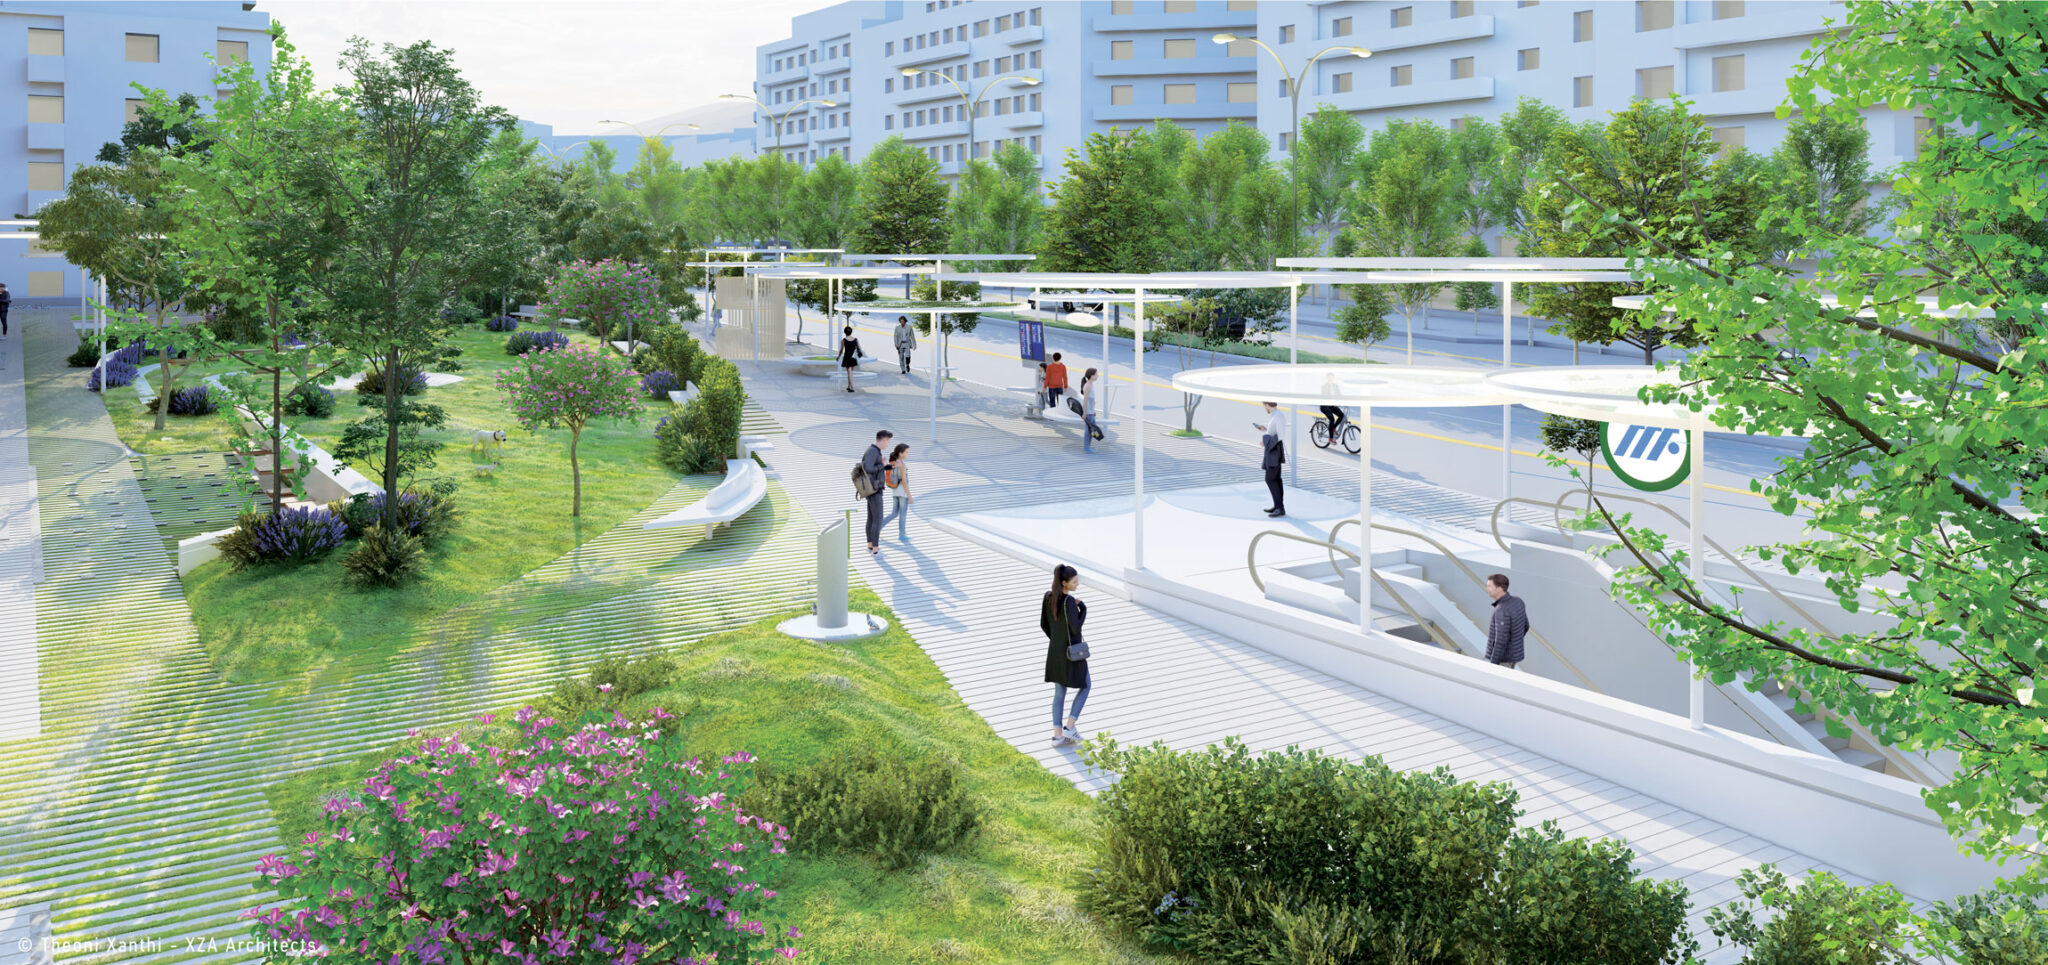 More information about "Το Α' Βραβείο στον αρχιτεκτονικό διαγωνισμό για την ανάπλαση του νέου σταθμού Μετρό Αλεξάνδρας"